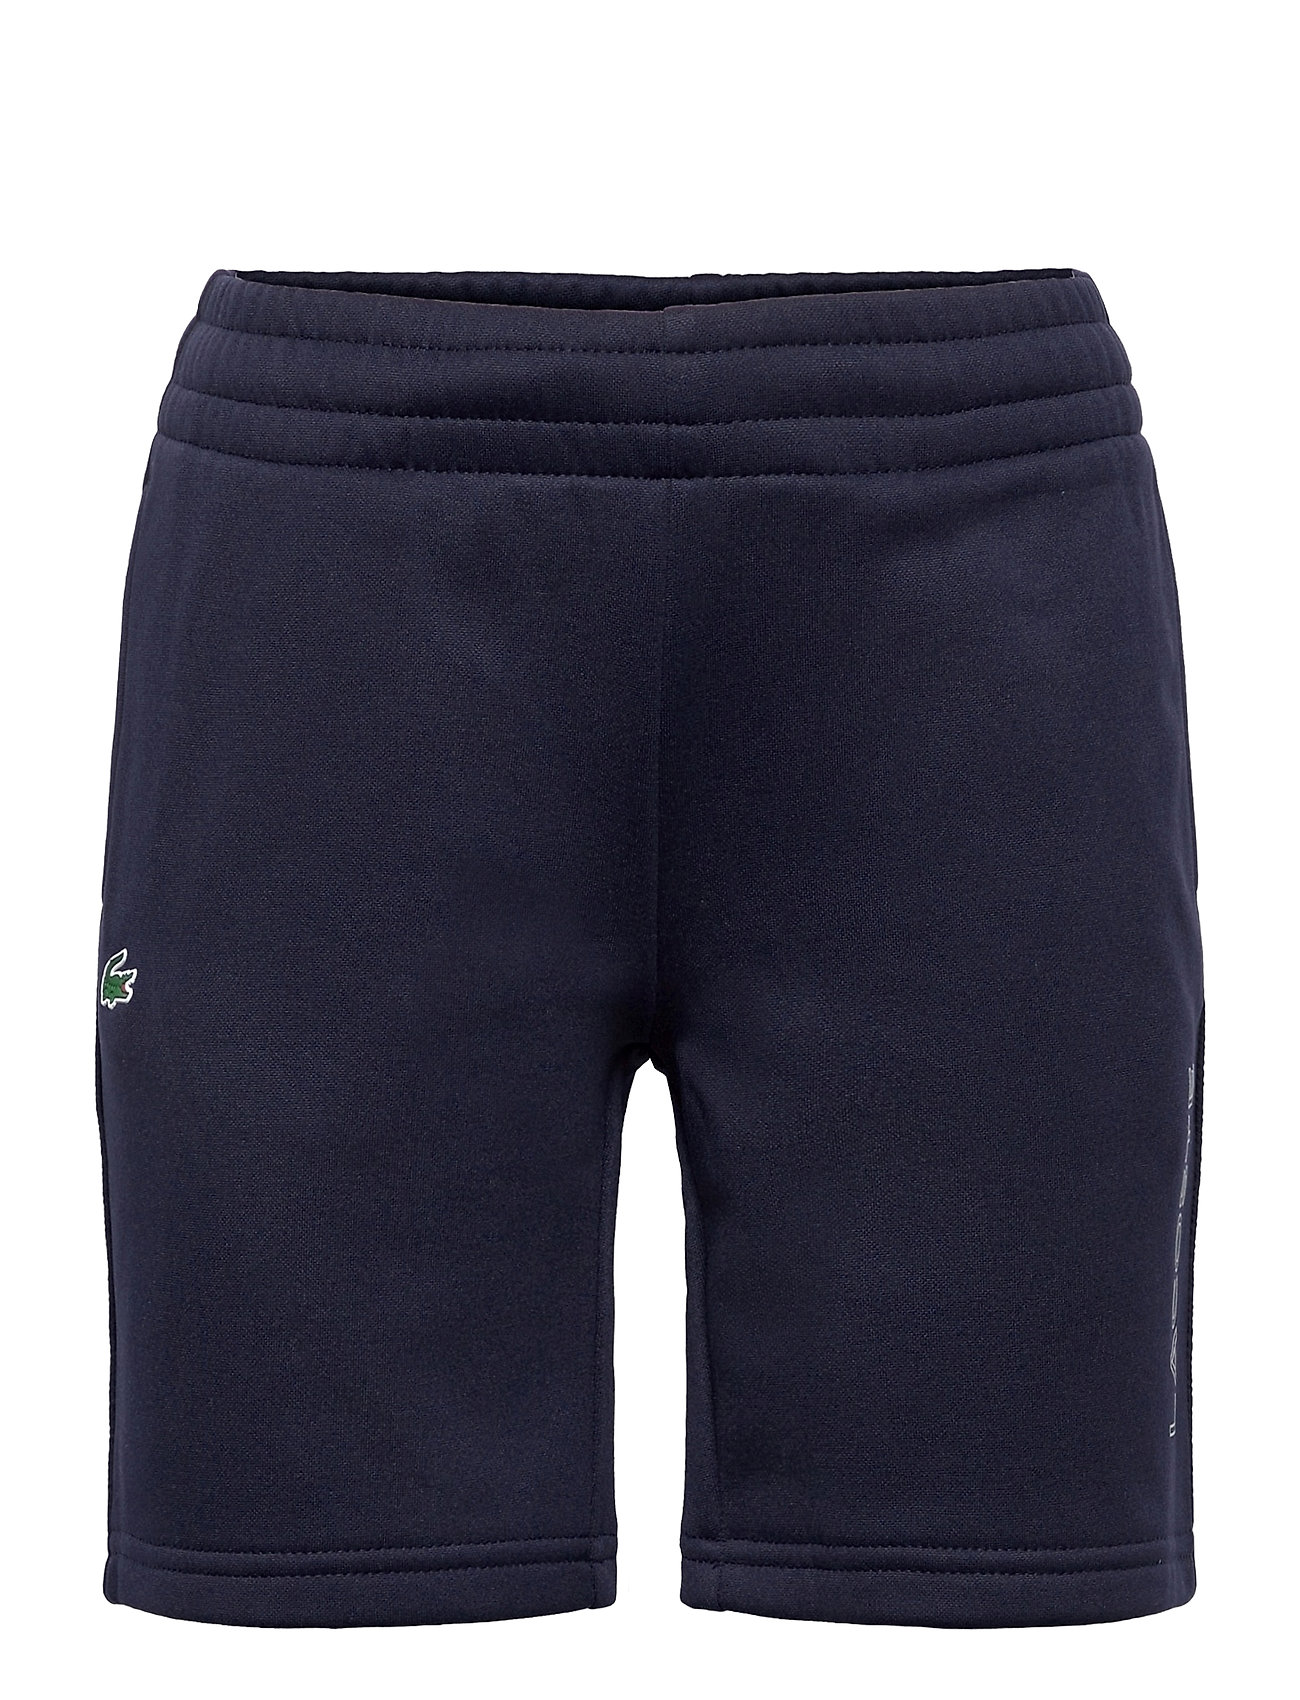 Lacoste – Children Shorts Shorts Blå Lacoste til børn Navy blue/navy blue -